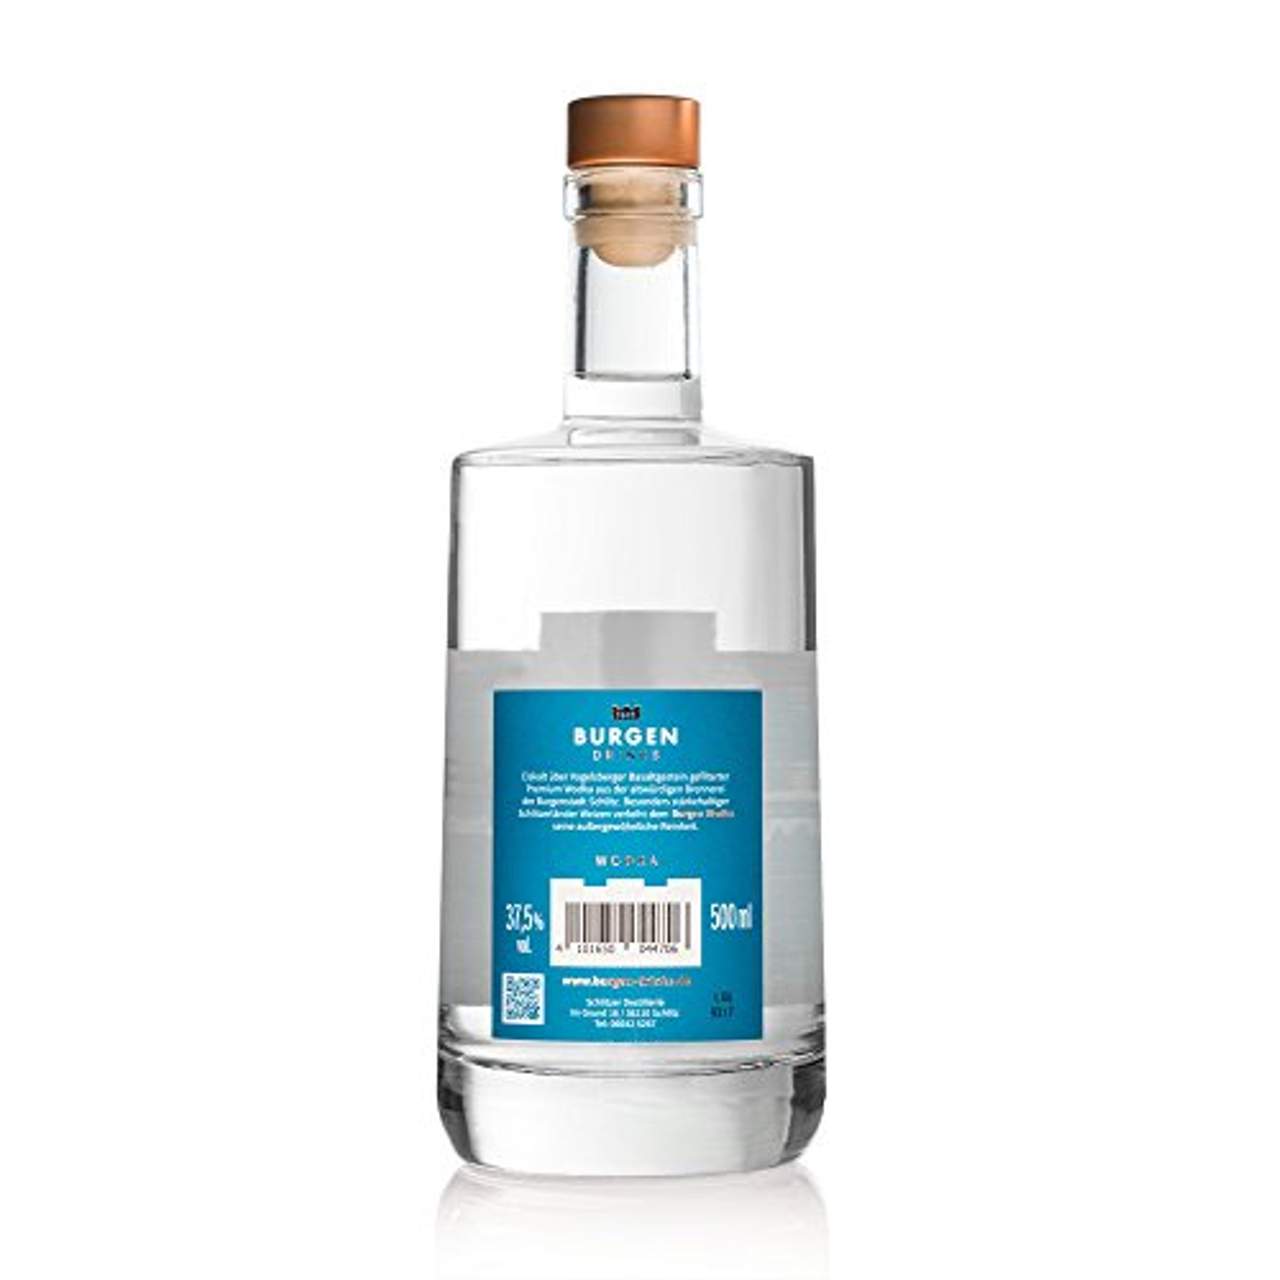 Burgen Wodka handcrafted 94 fach destilliert